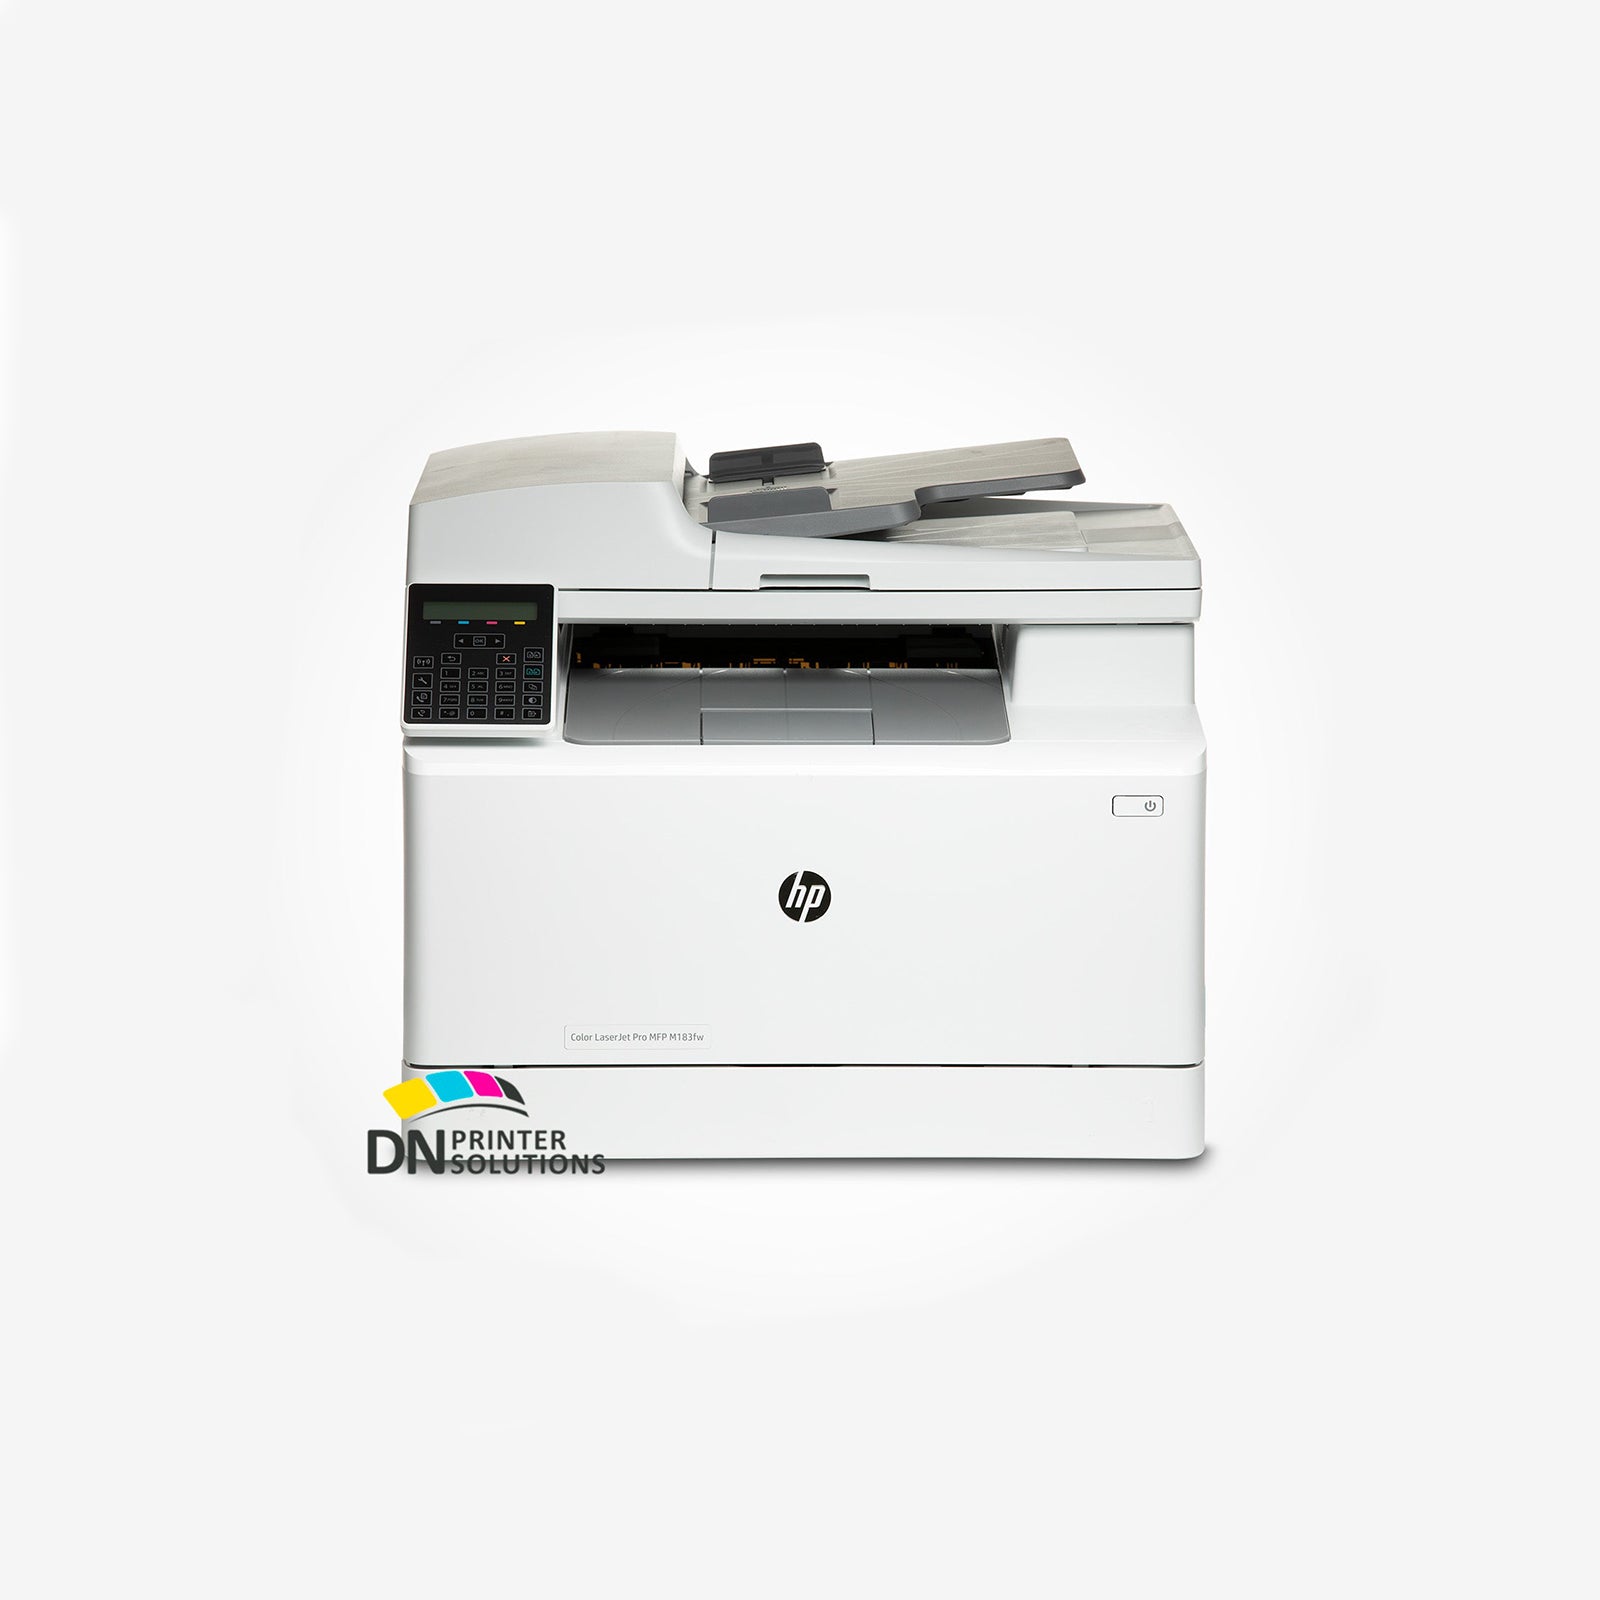 HP Color LaserJet Pro MFP M183fw Printer 7KW56A Refurbished